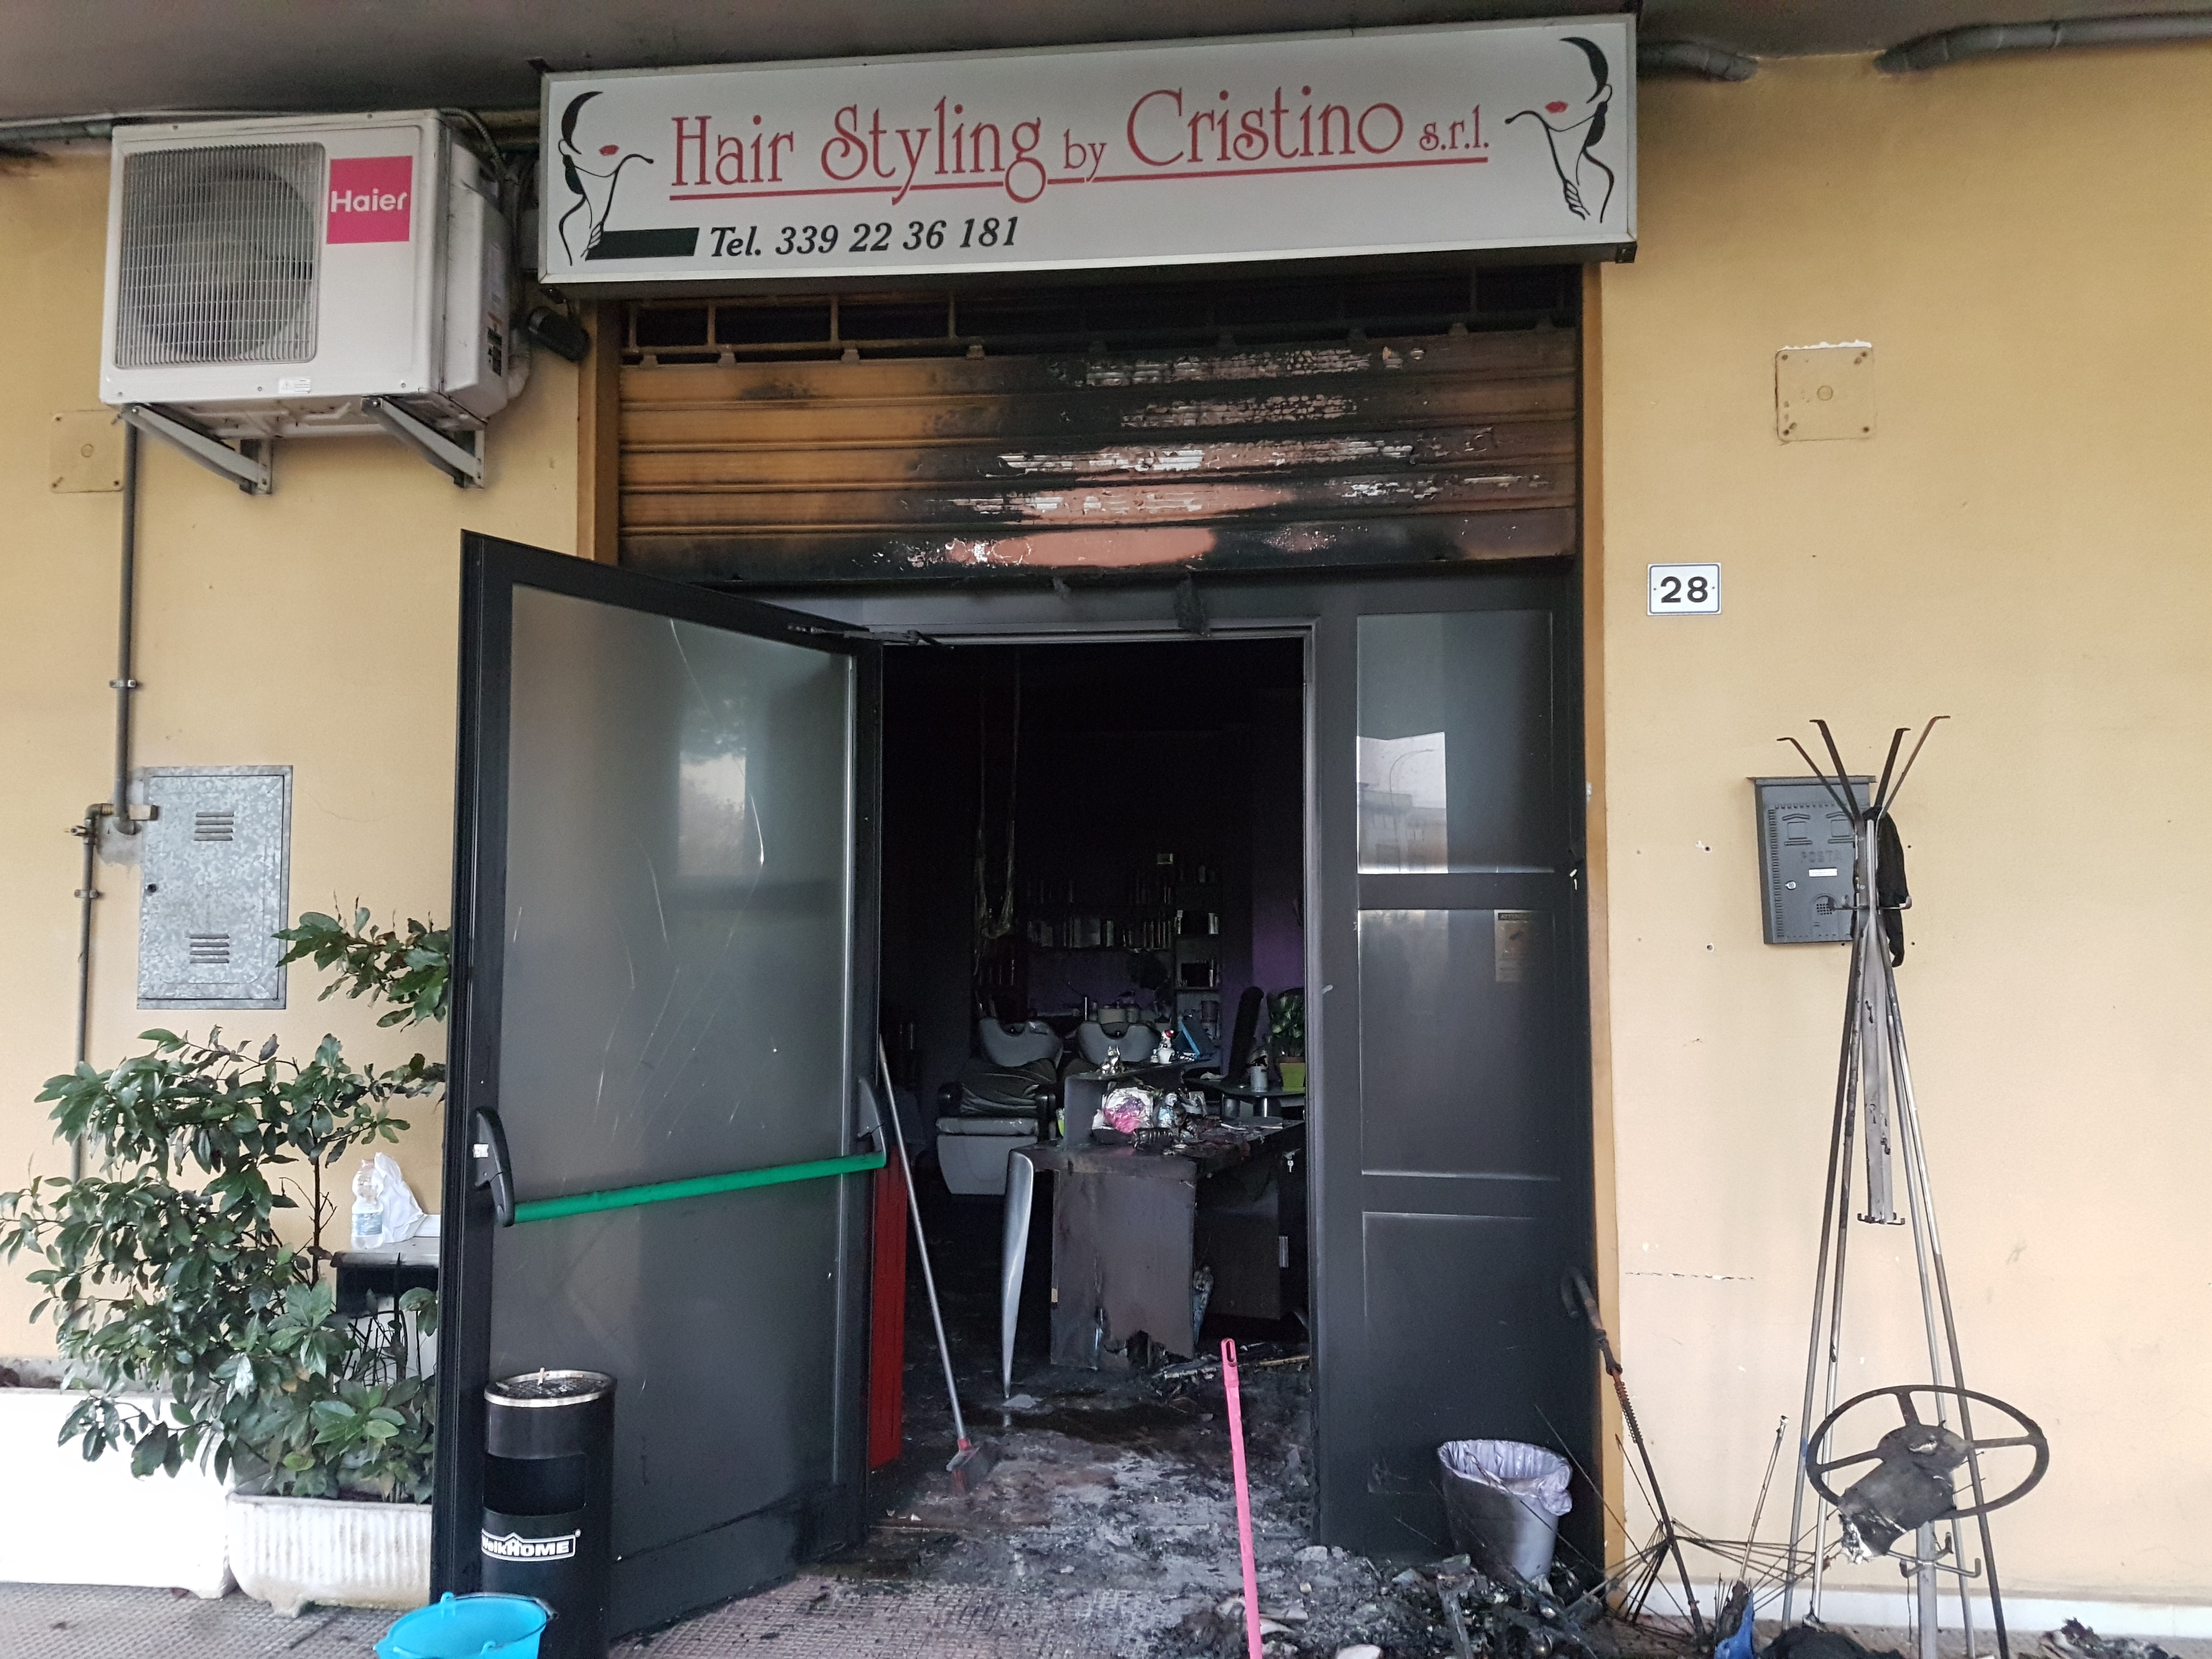 Benevento| Attentato a Cretarossa, distrutto negozio